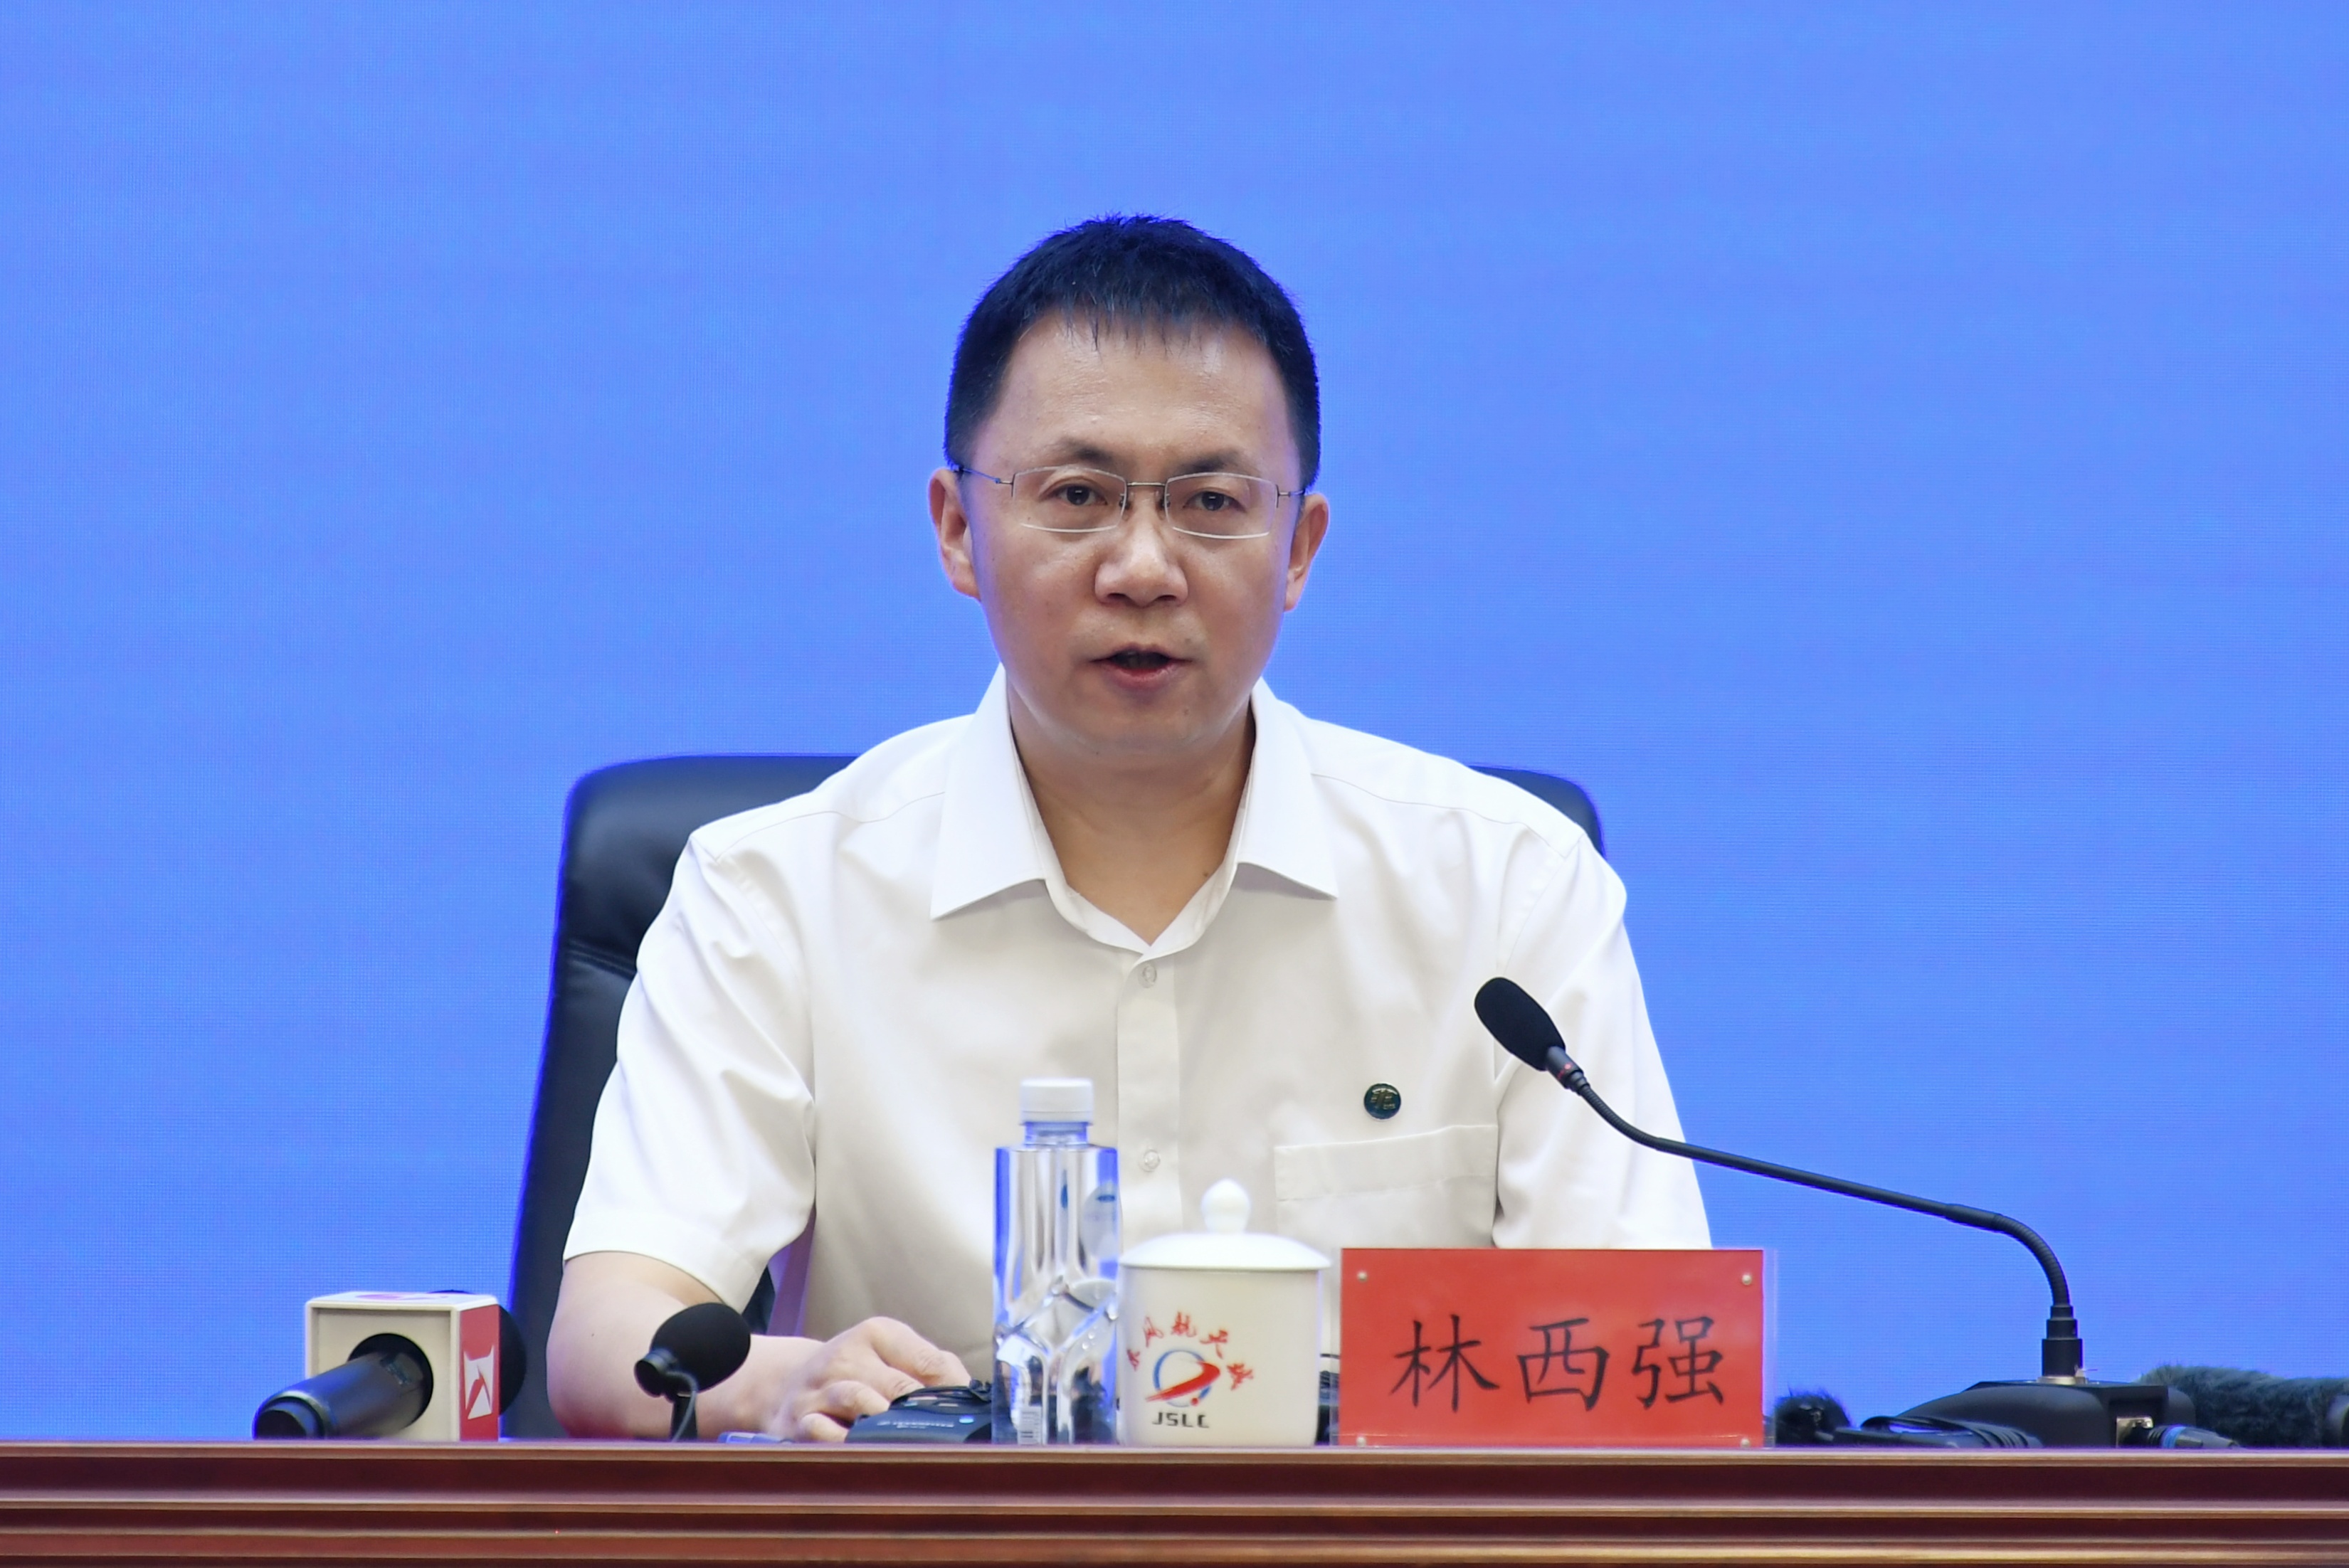 中国载人航天工程办公室副主任林西强。人民网记者 翁奇羽摄